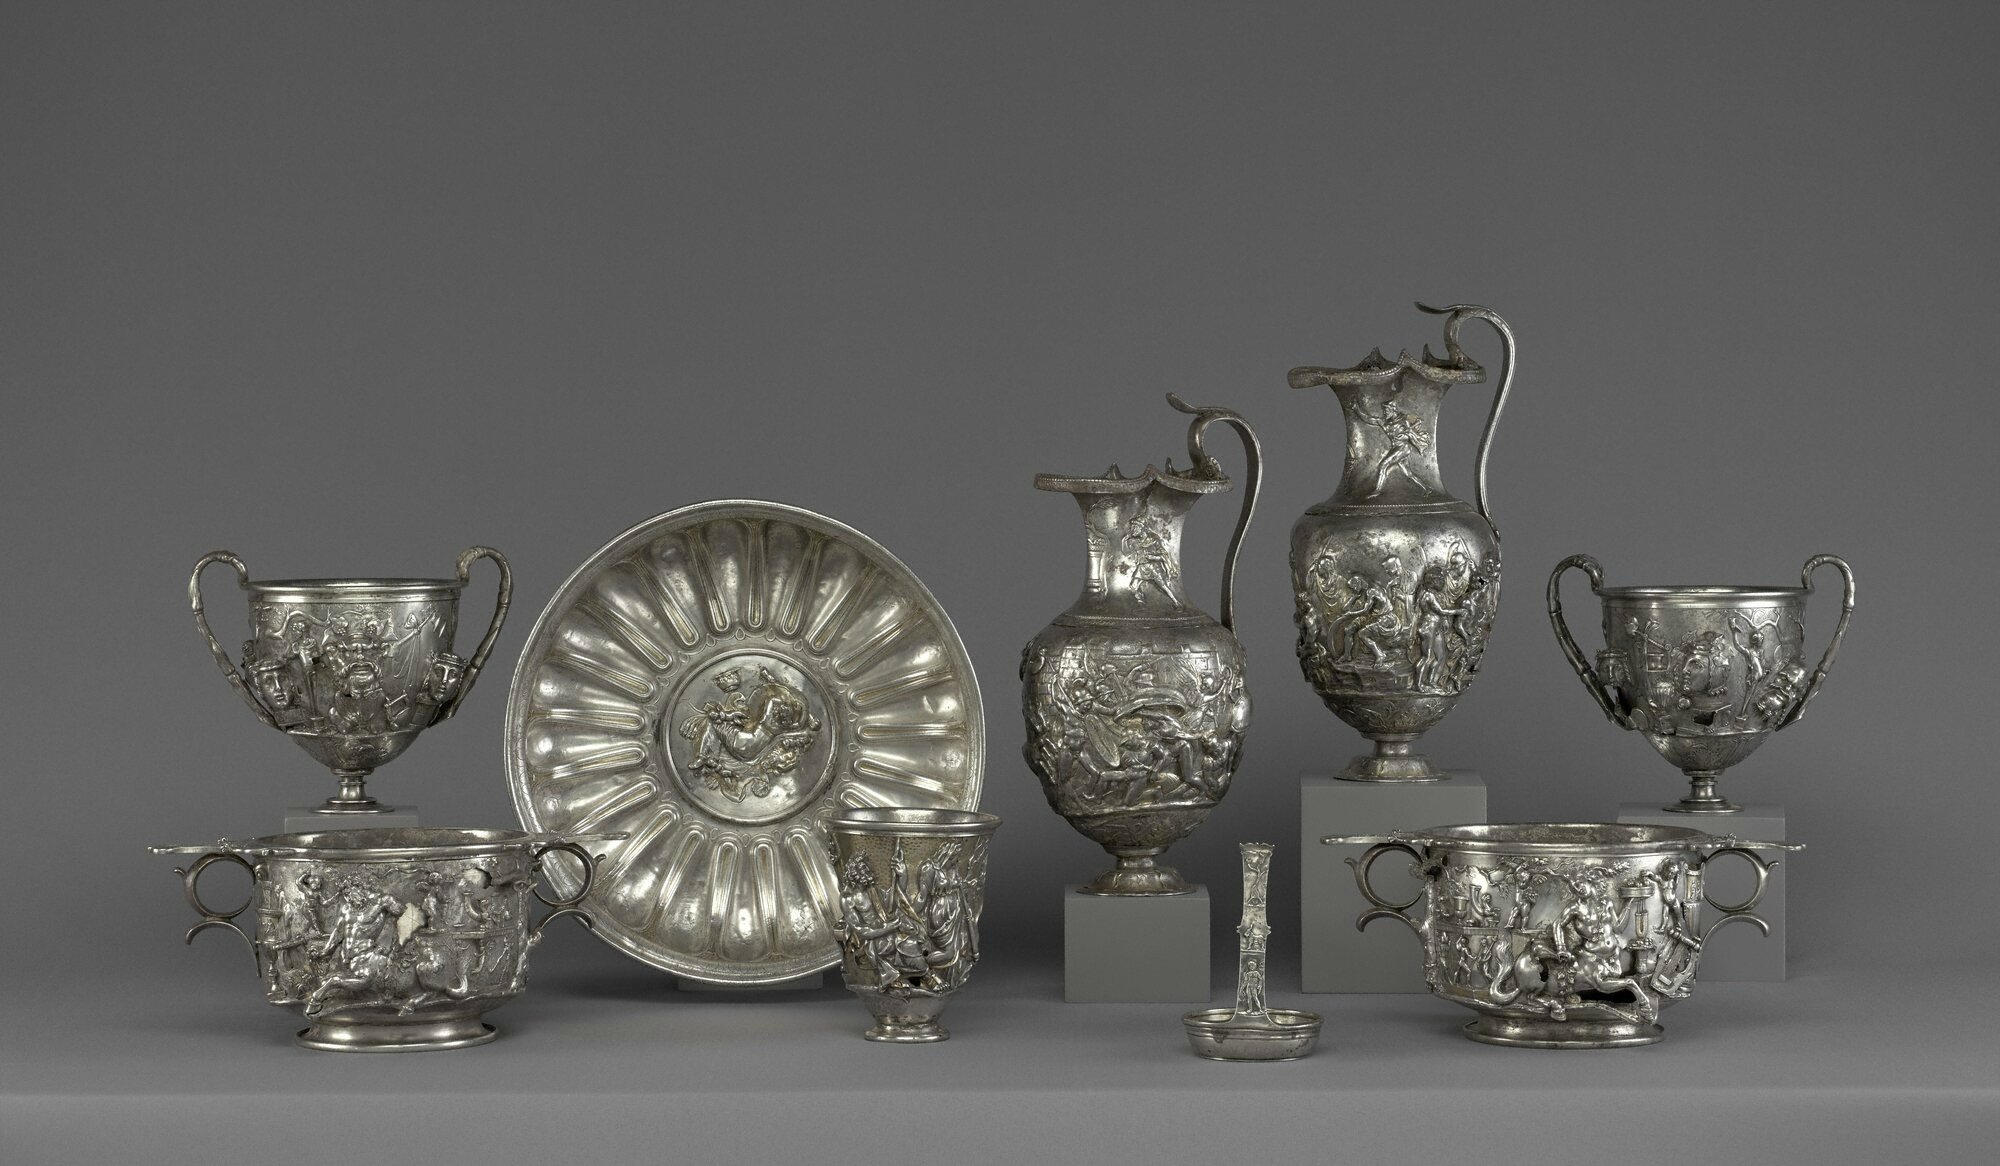 Luxury: Treasures of the Roman Empire